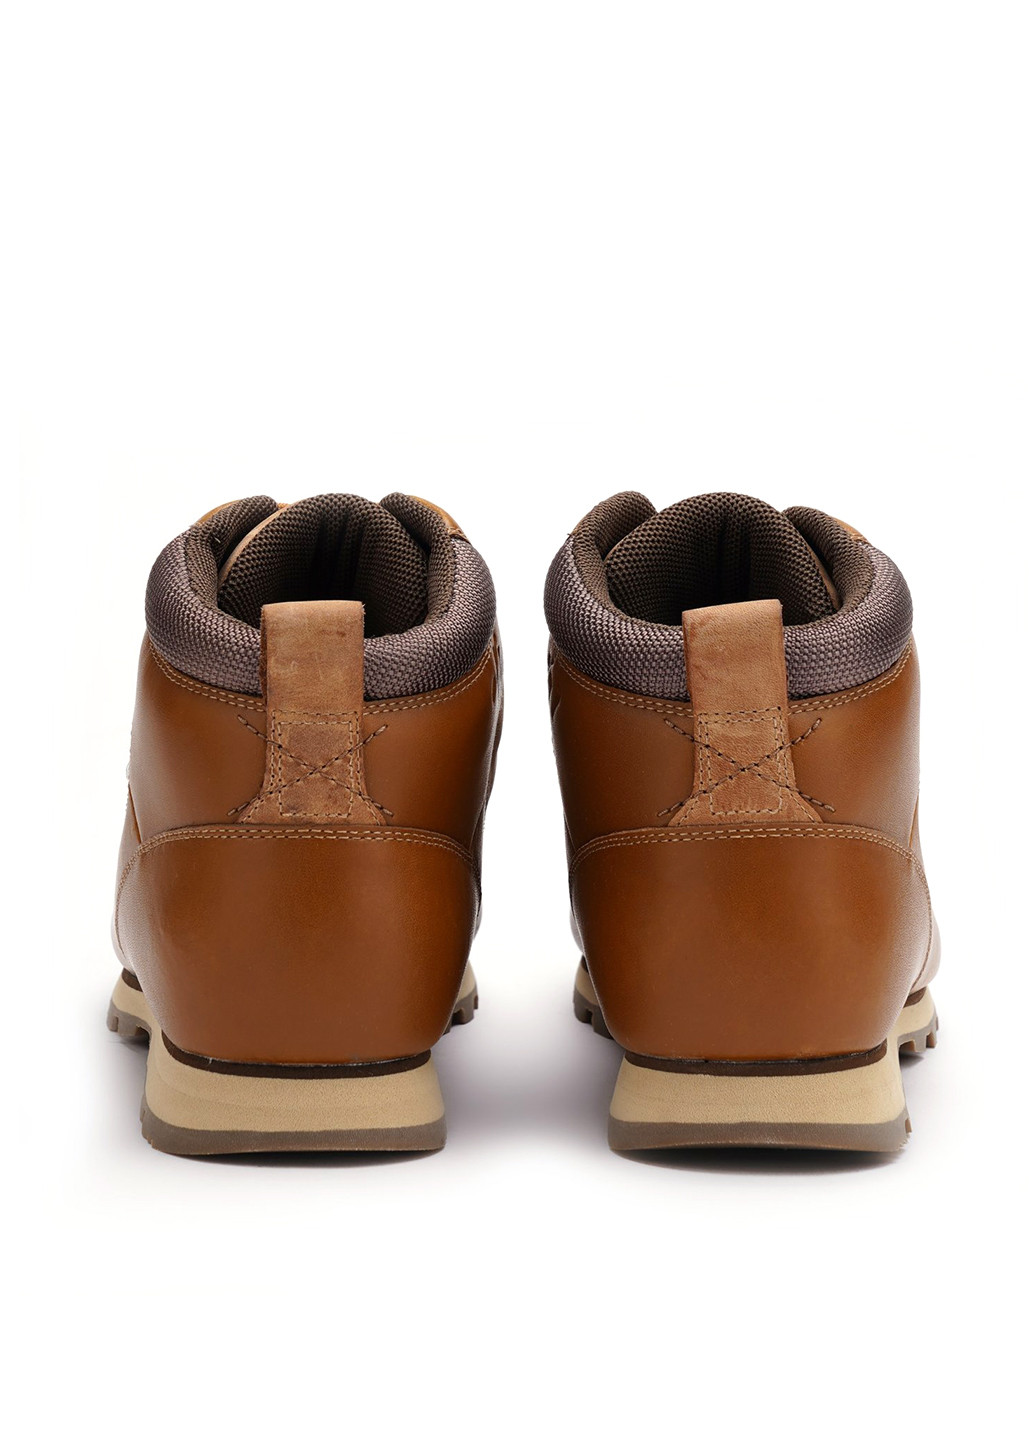 Зимние ботинки Helly Hansen с аппликацией, с тиснением из натурального нубука